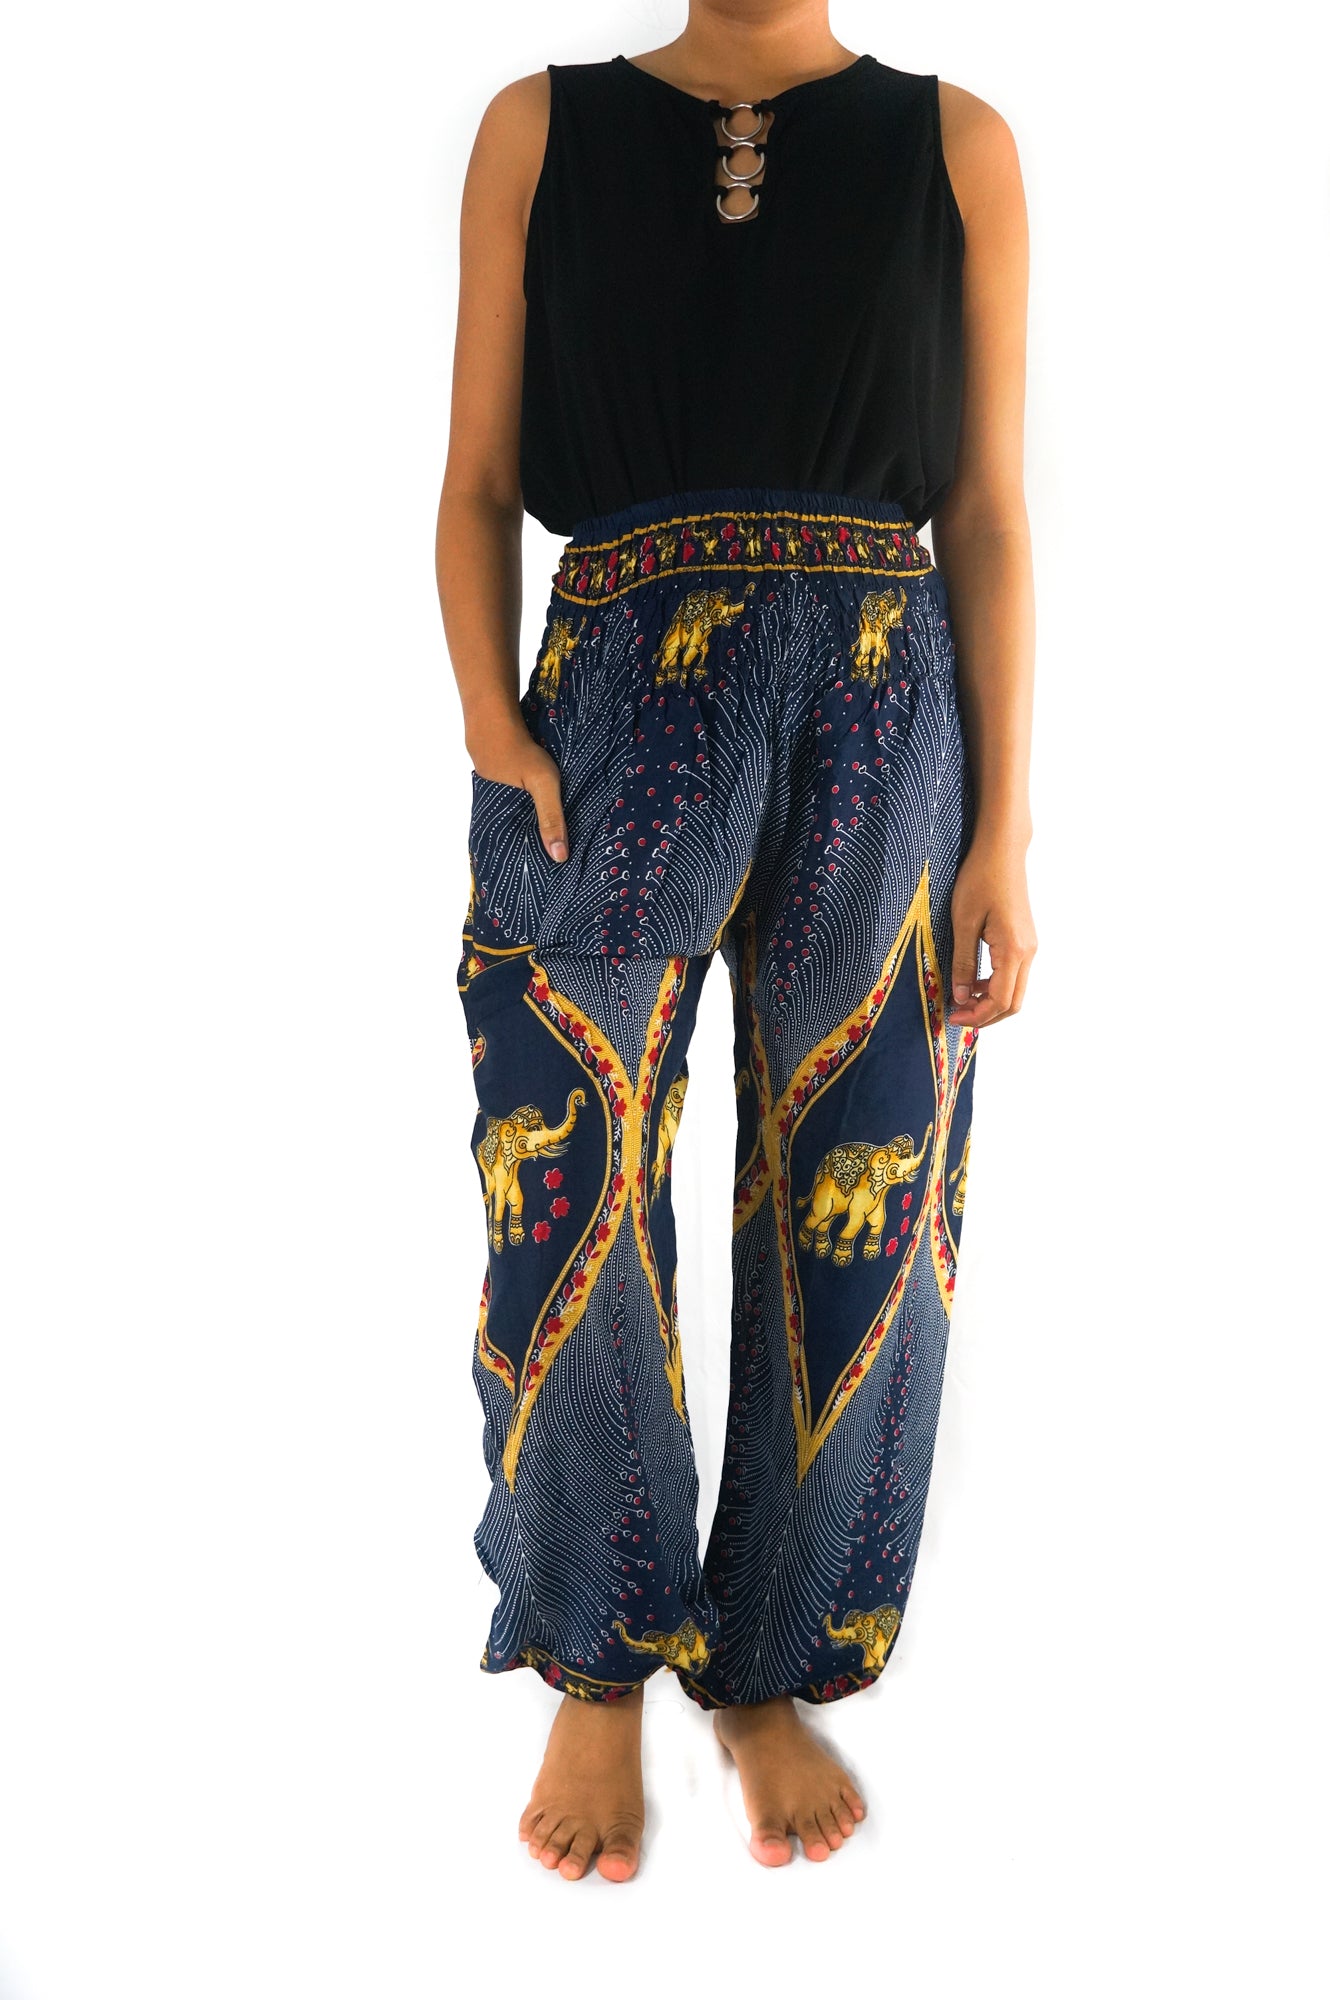 Handmade Unisex Harem Style, Hindu Elephant Print Yoga/Meditation Pant